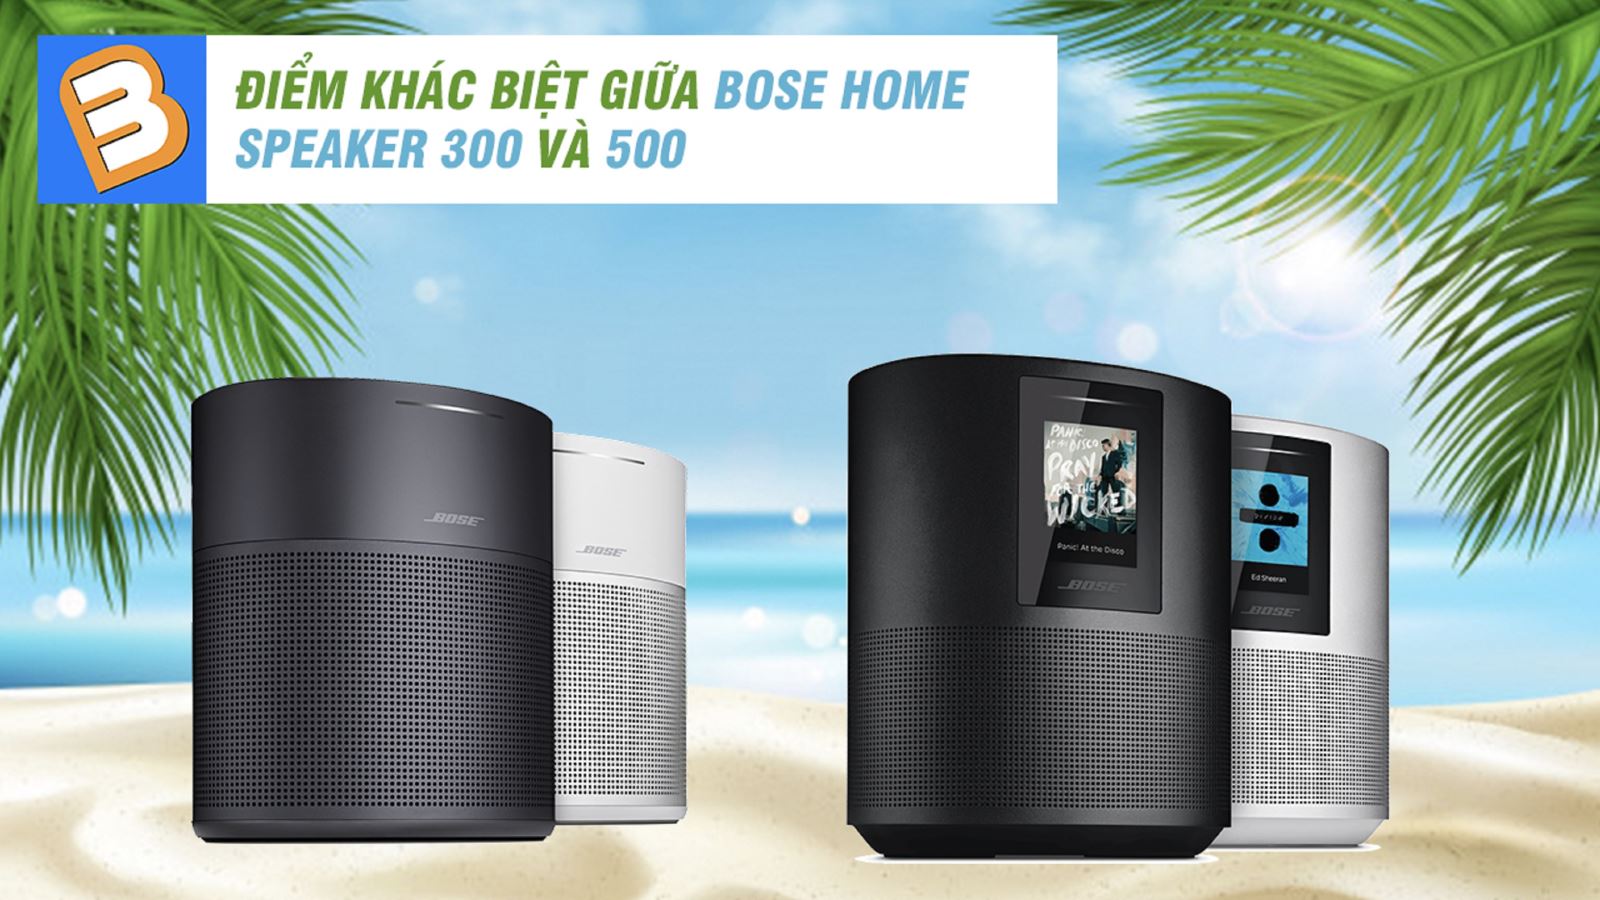 Điểm khác biệt giữa Bose Home Speaker 300 và 500